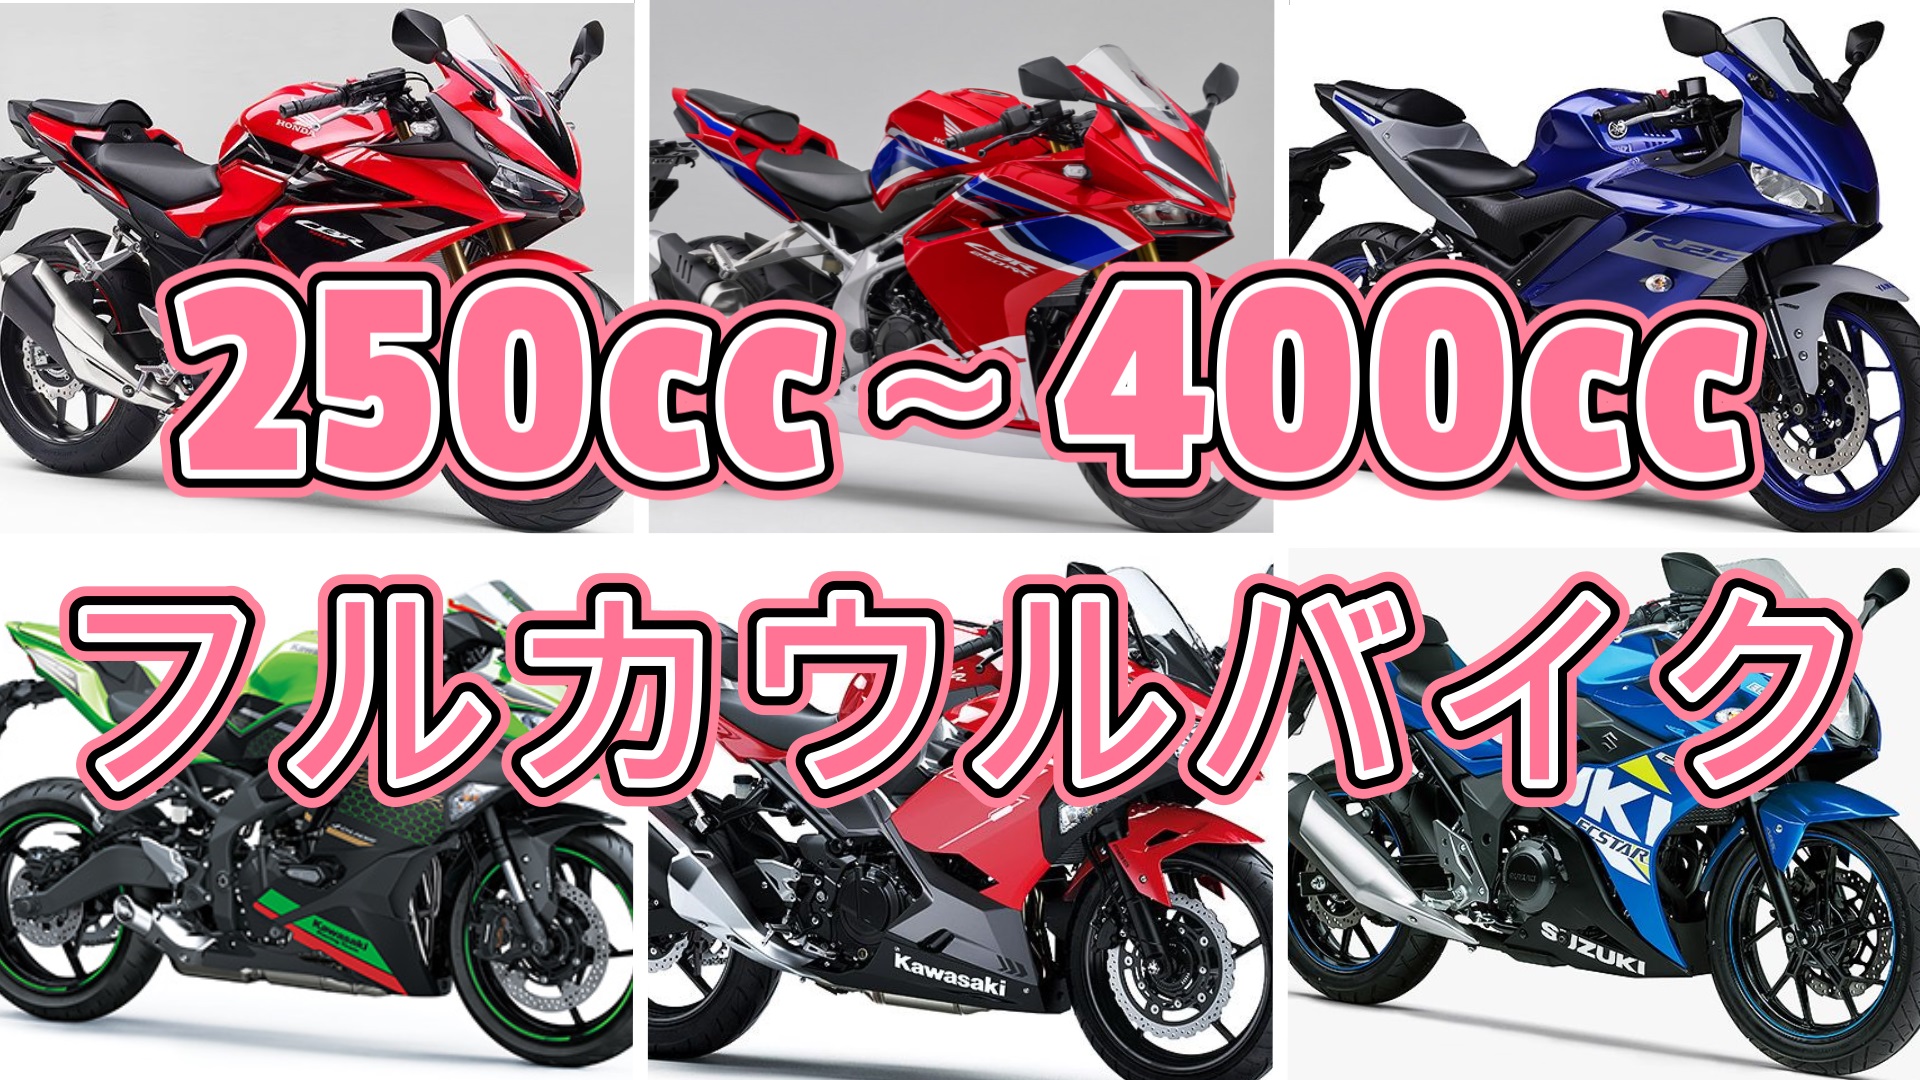 ジャンル別バイク紹介 フルカウル スーパースポーツバイク編 250cc 400cc Masa S Motor Life Blog